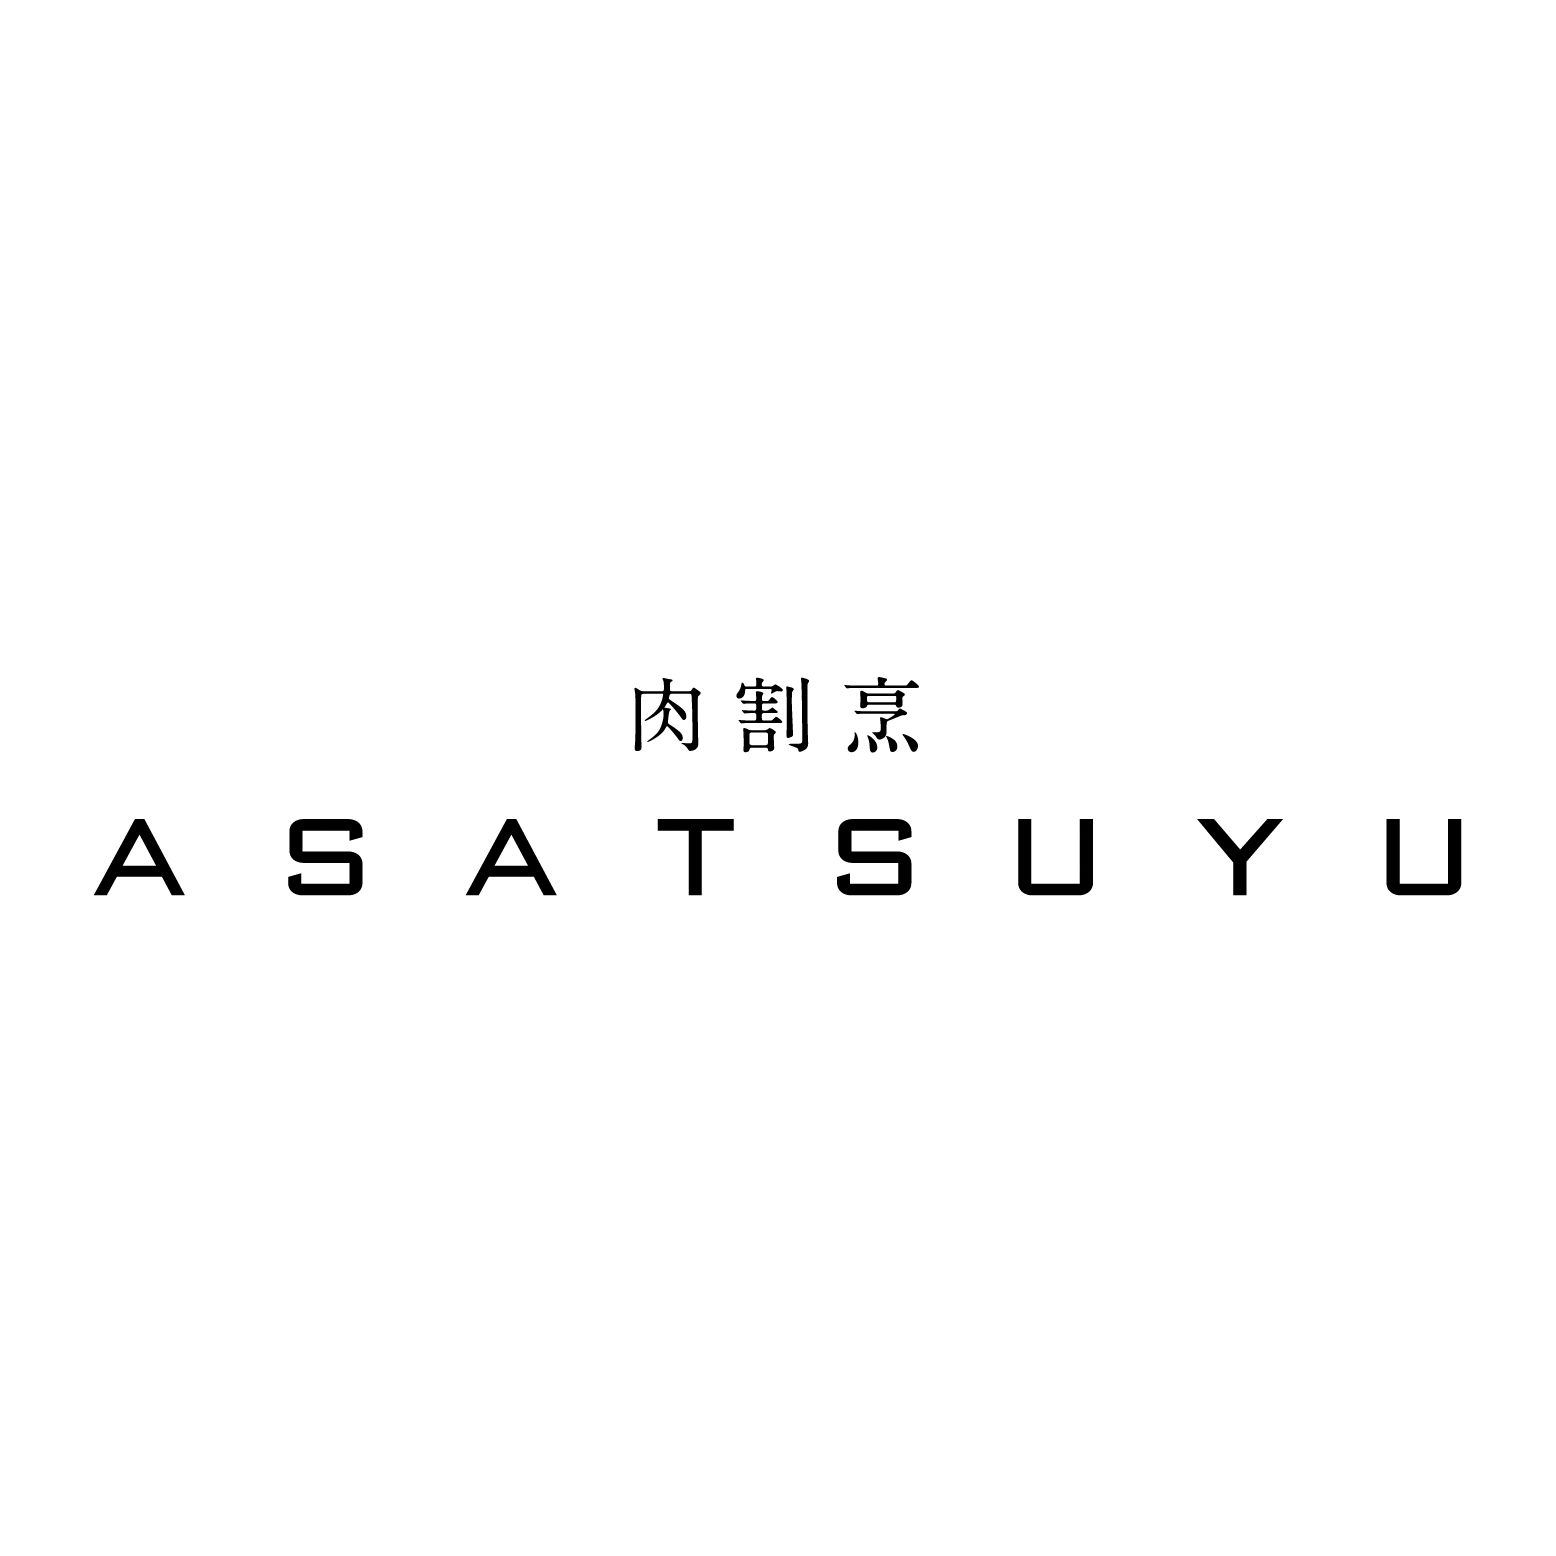 肉割烹 ASATSUYU Logo